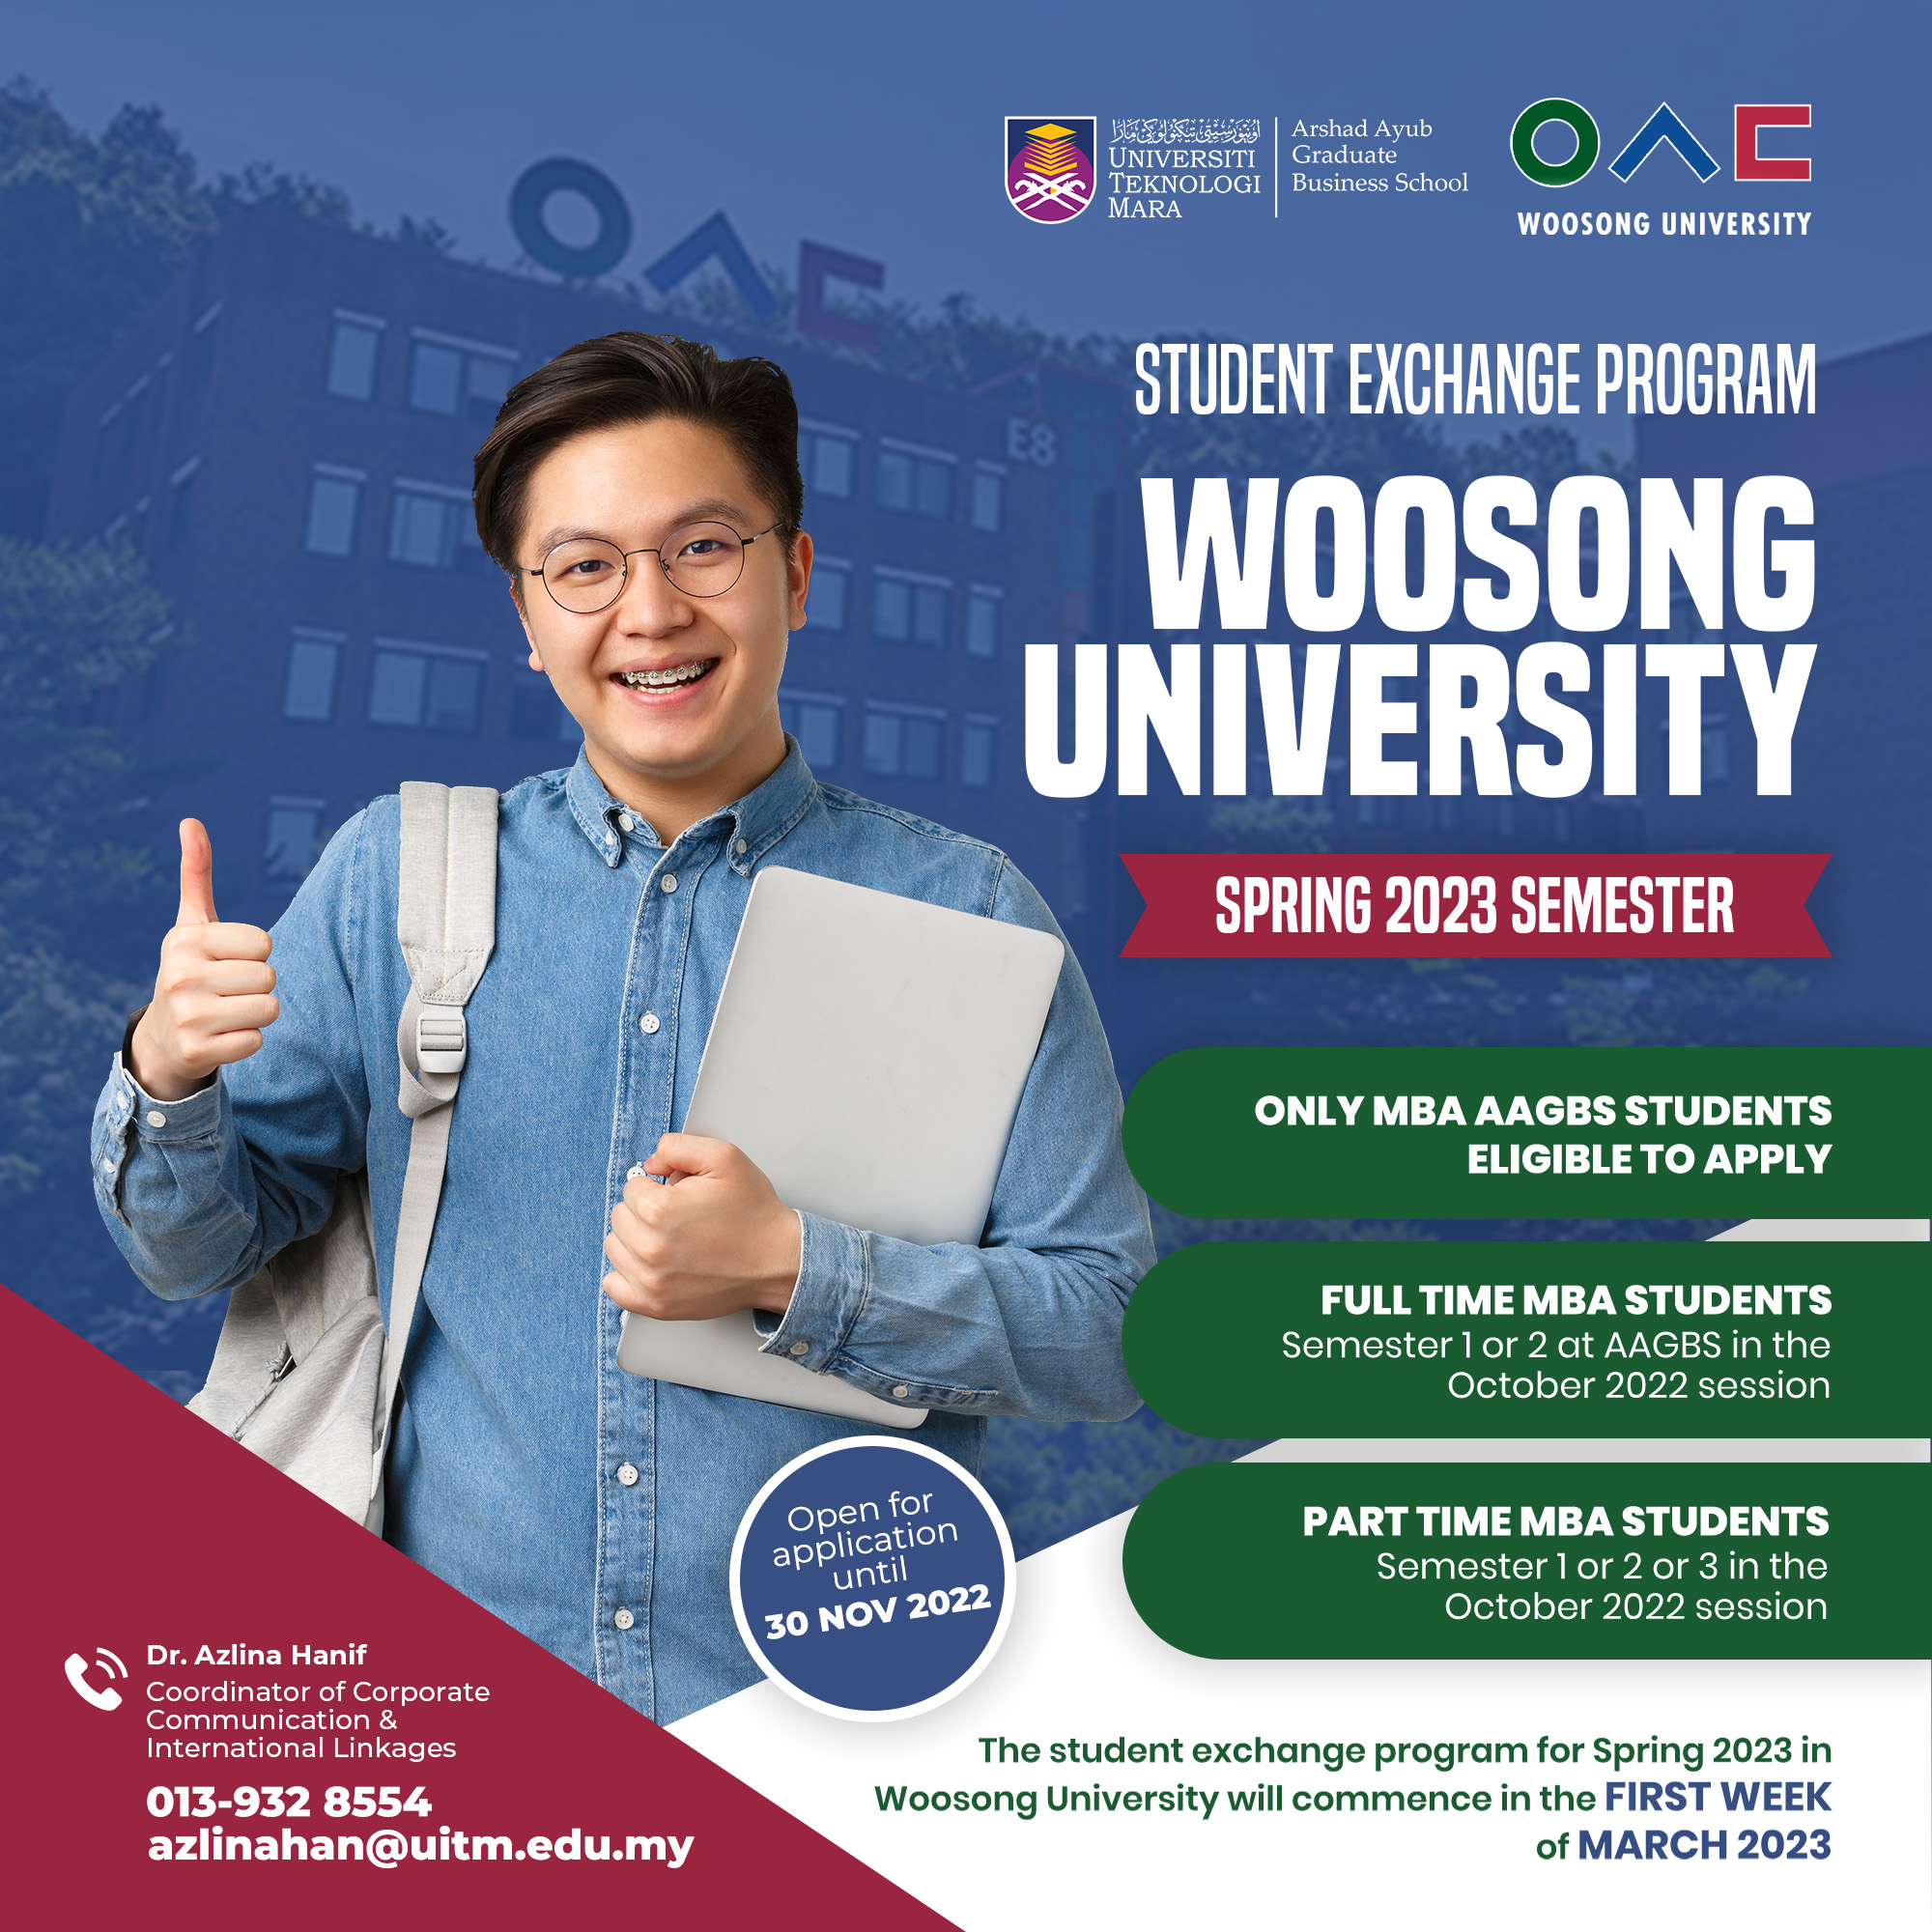 Woosong University Student Exchange Program in Korea (Spring 2023)